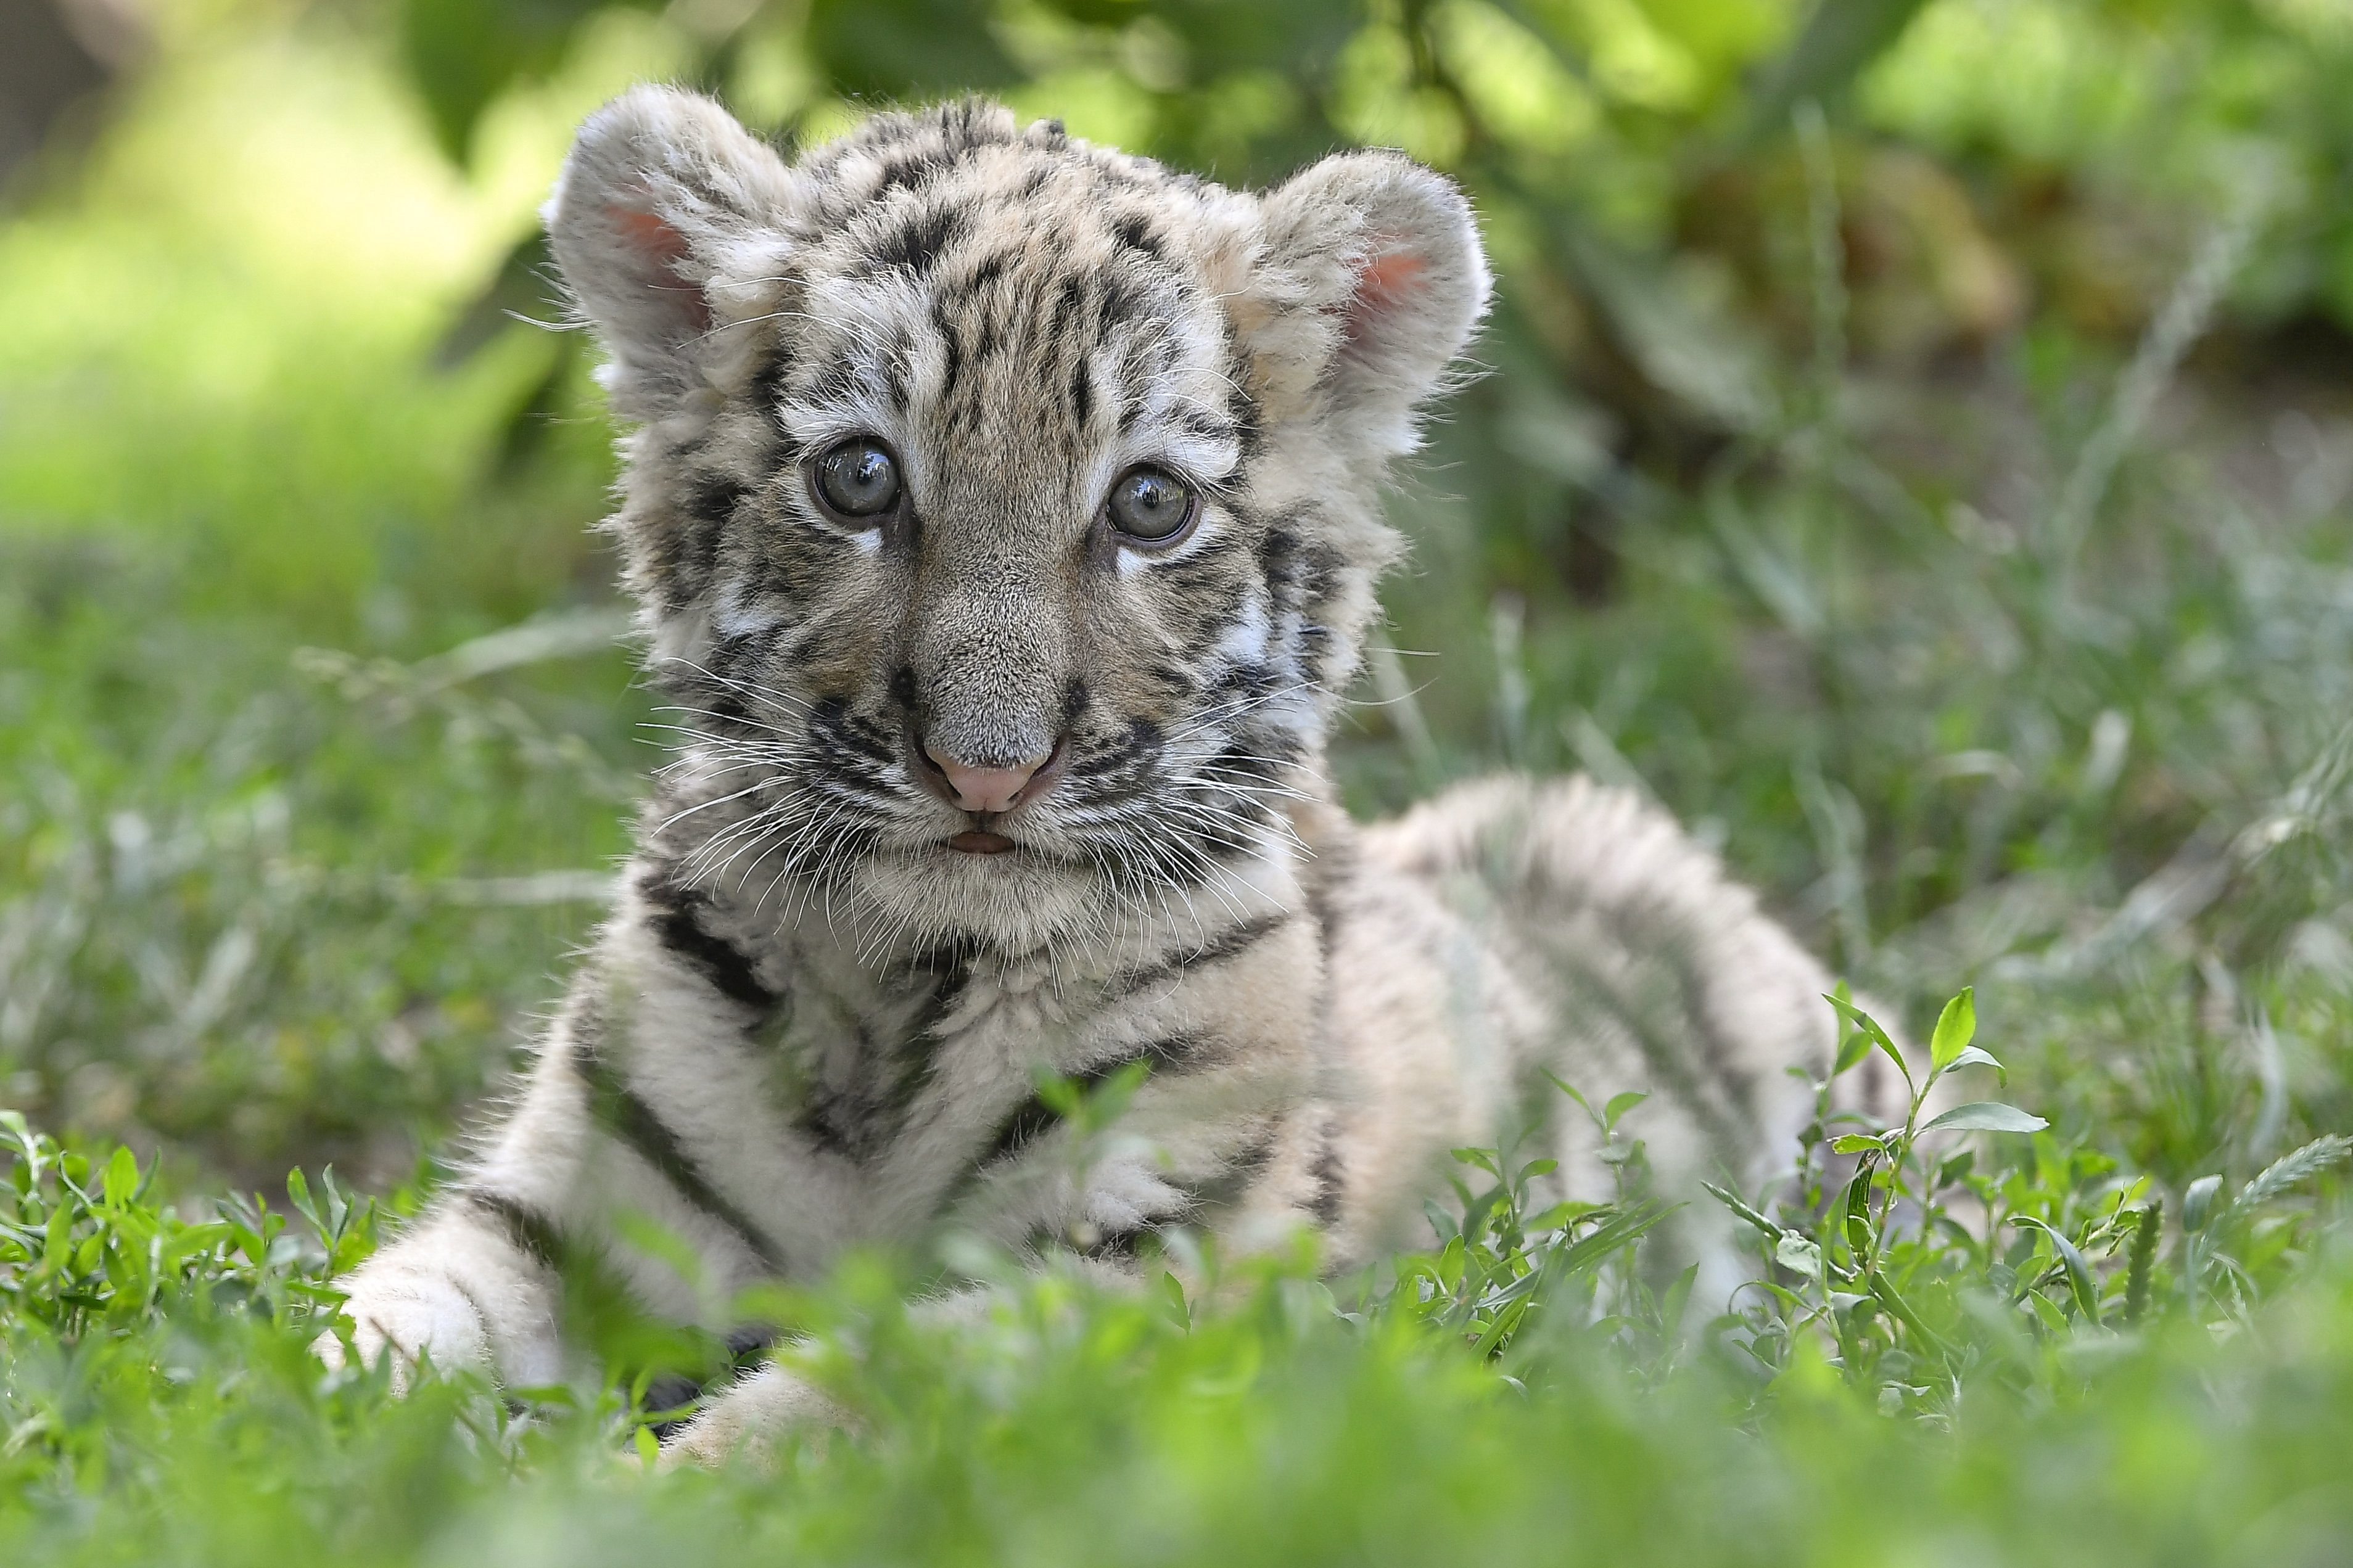 60 szibériai tigris született a világ legnagyobb tenyészközpontjában